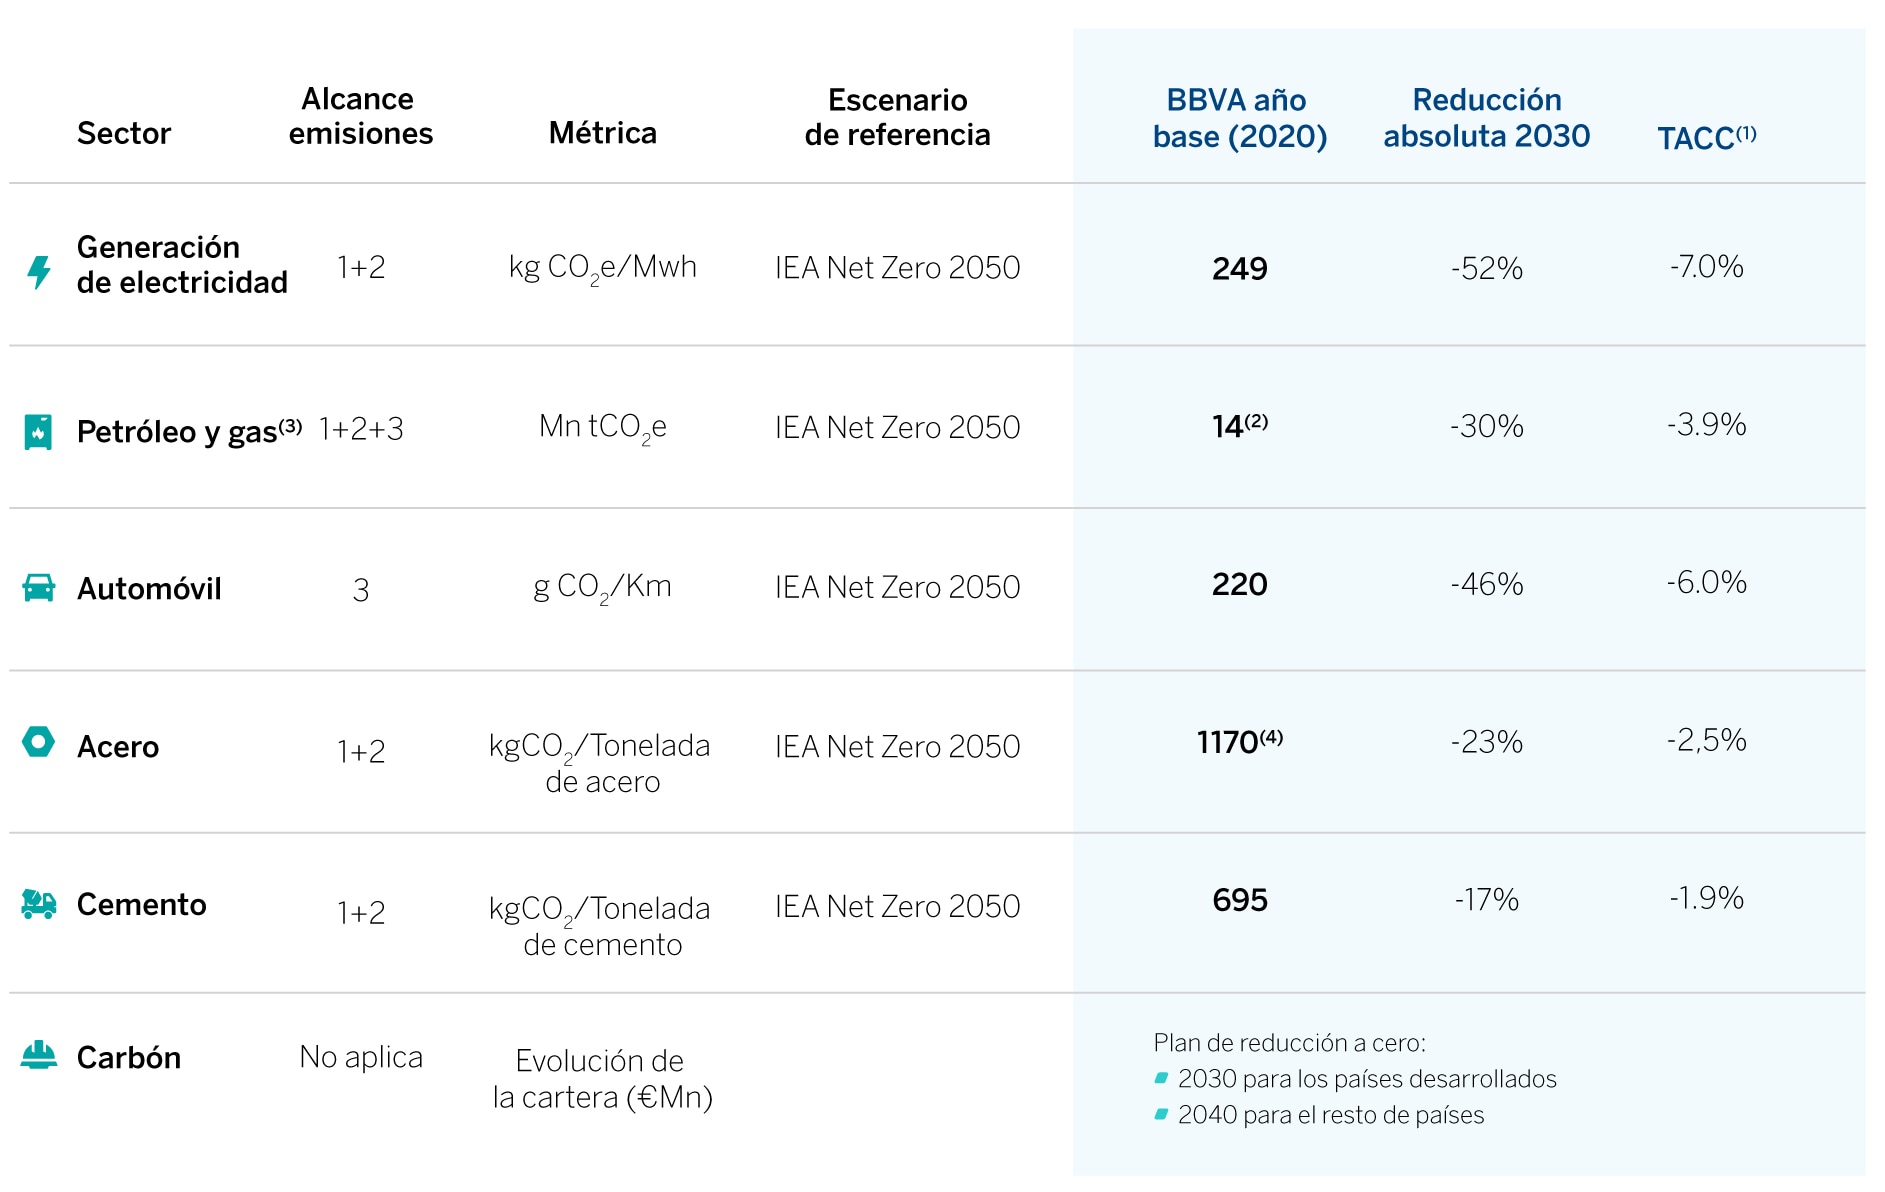 BBVA se compromete a que su cartera de clientes de petróleo y gas reduzca sus emisiones un 30% antes de 2030